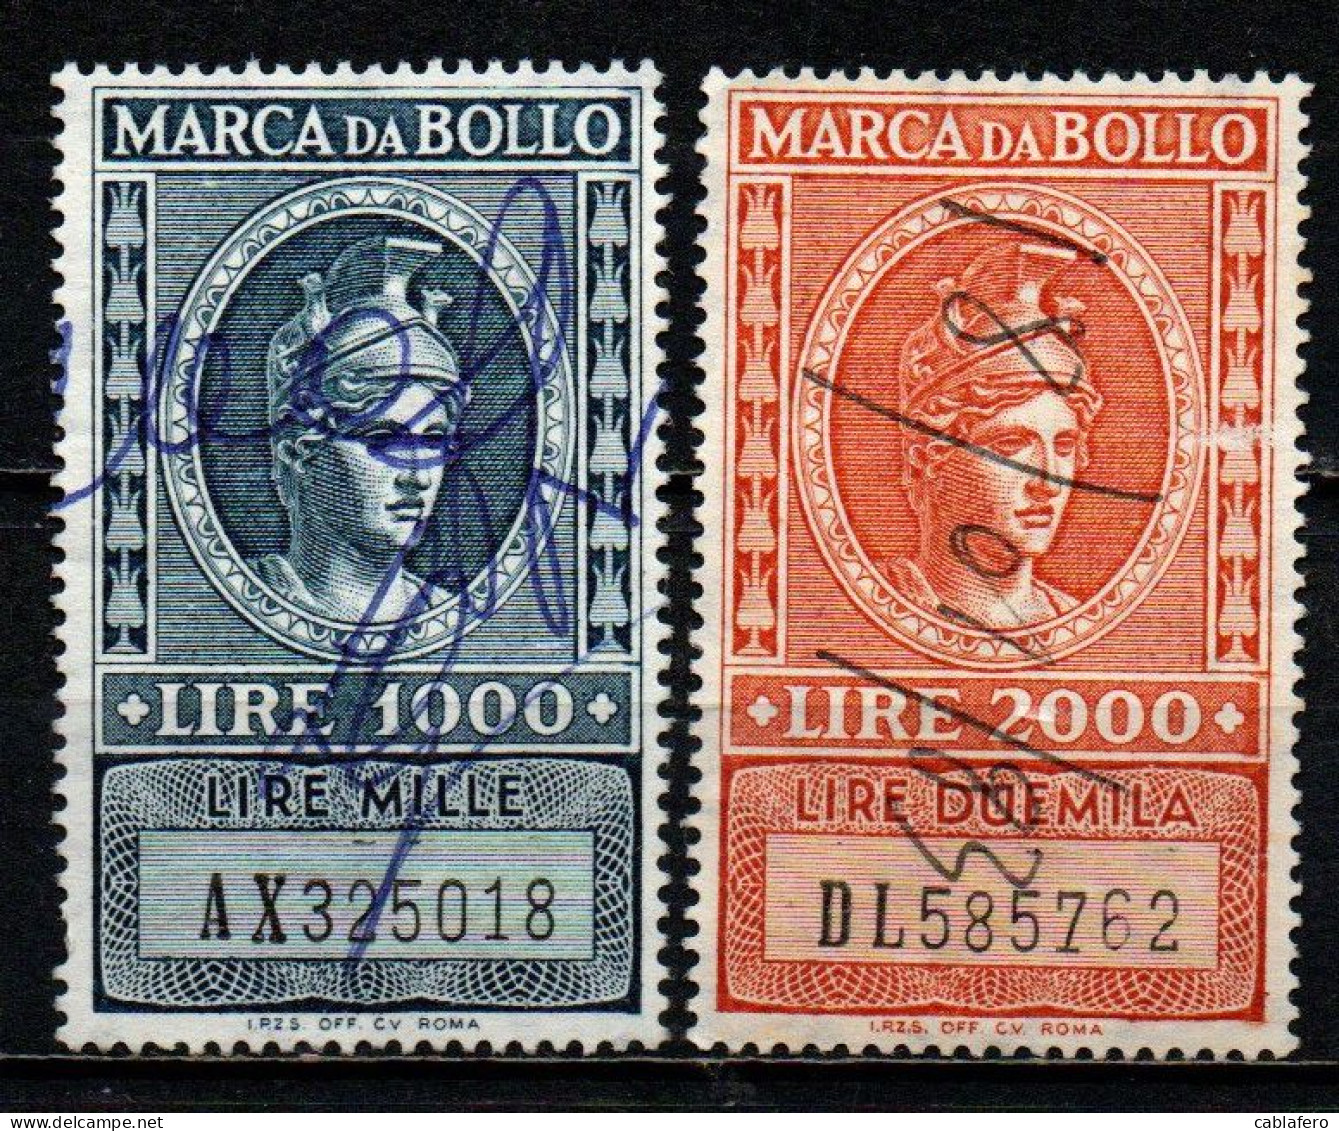 ITALIA REPUBBLICA - 1959 - MARCA DA BOLLO A TASSA FISSA - FILIGRANA STELLA - NUOVO FORMATO - USATI - Fiscale Zegels